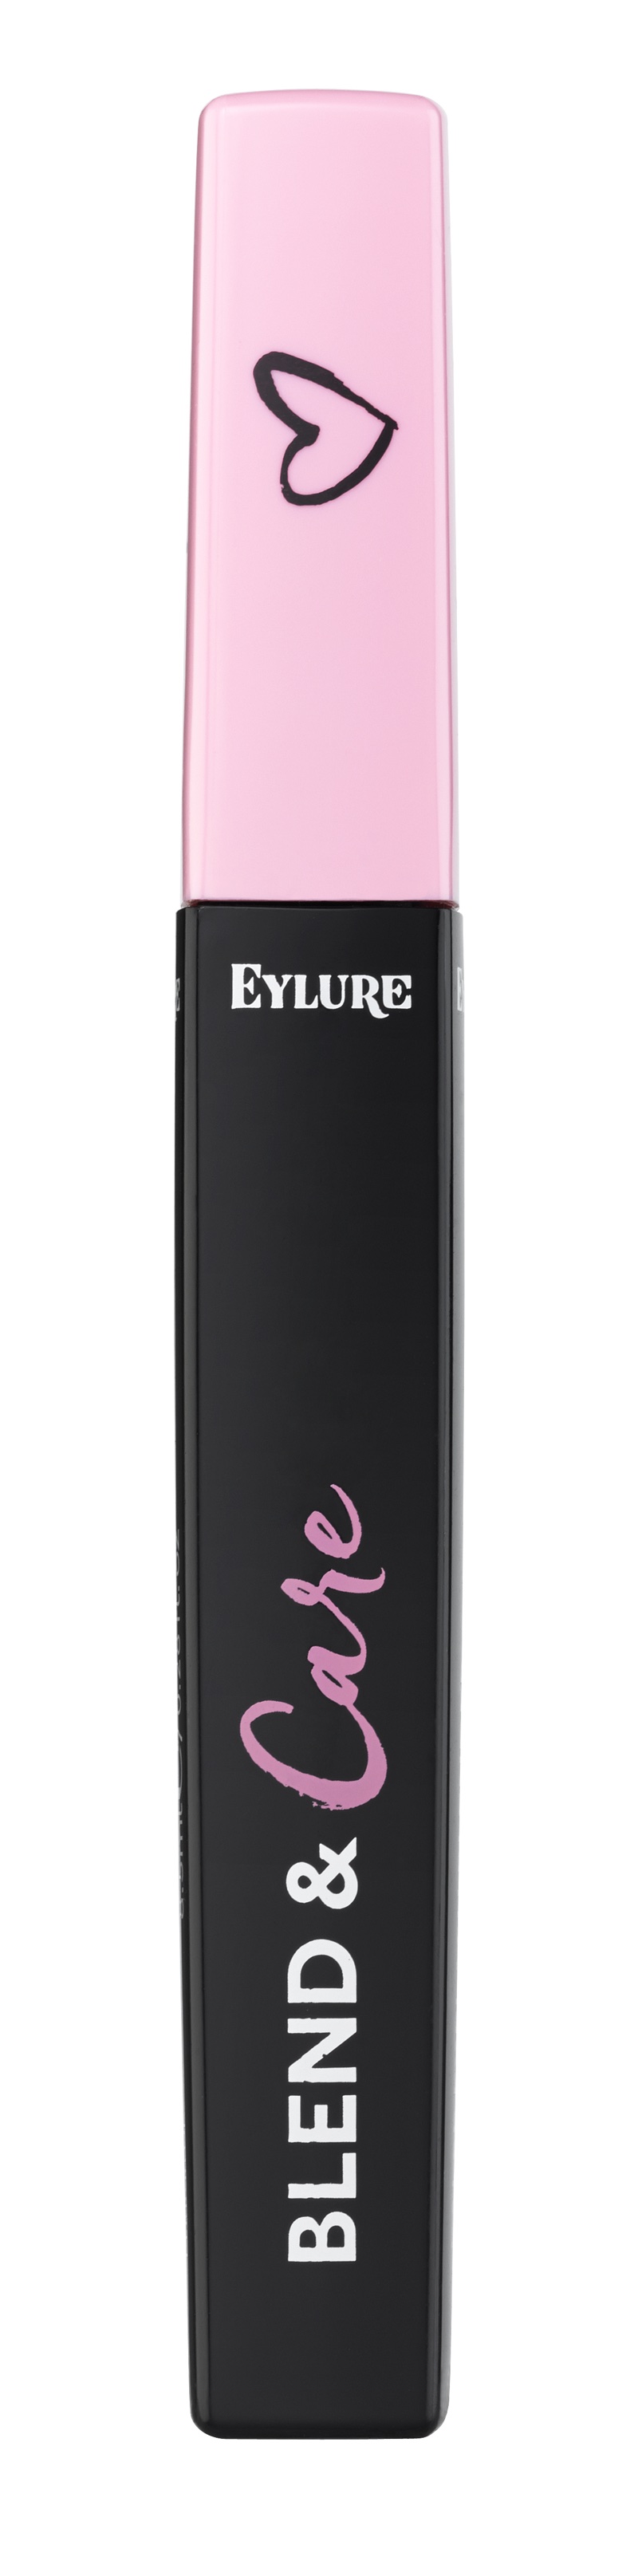 Eylure set to launch Blend & Care mascara for false eyelashes